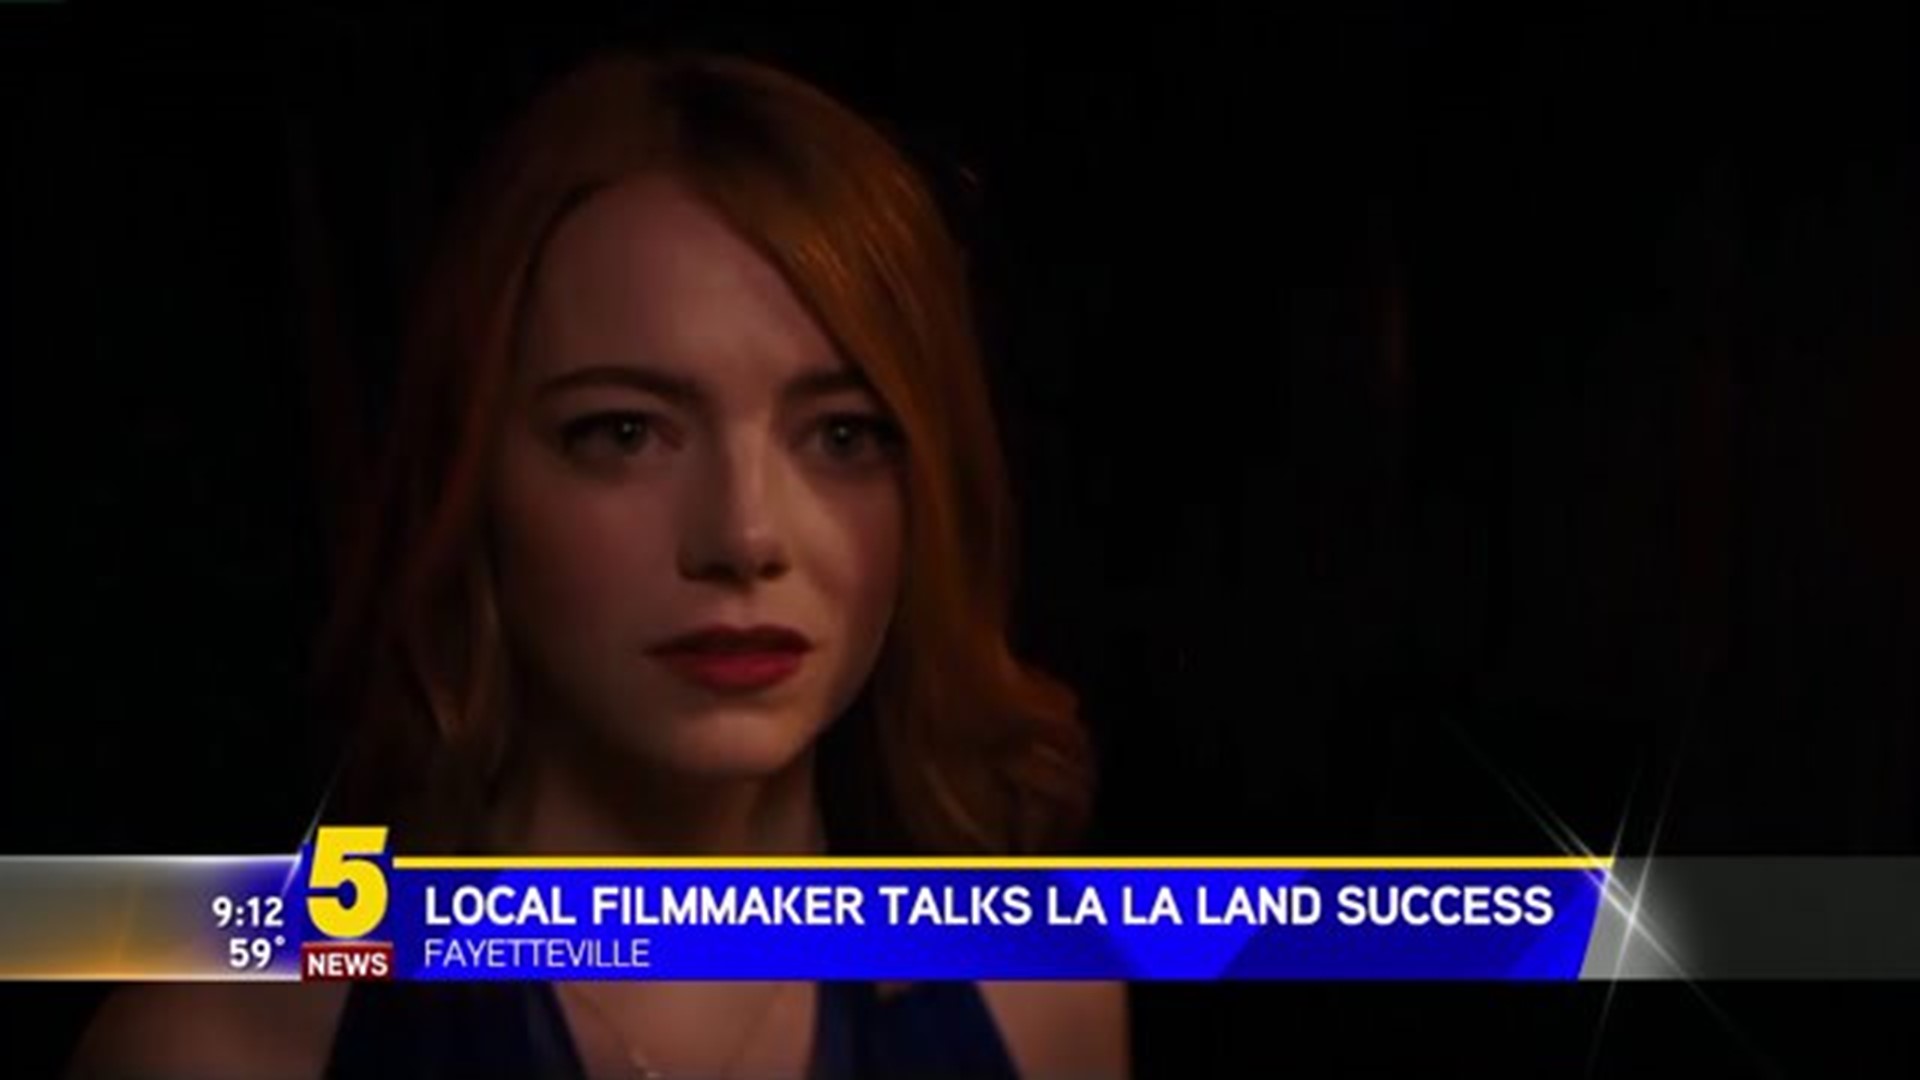 LOCAL FILMMAKER TALKS "LA LA LAND" SUCCESS